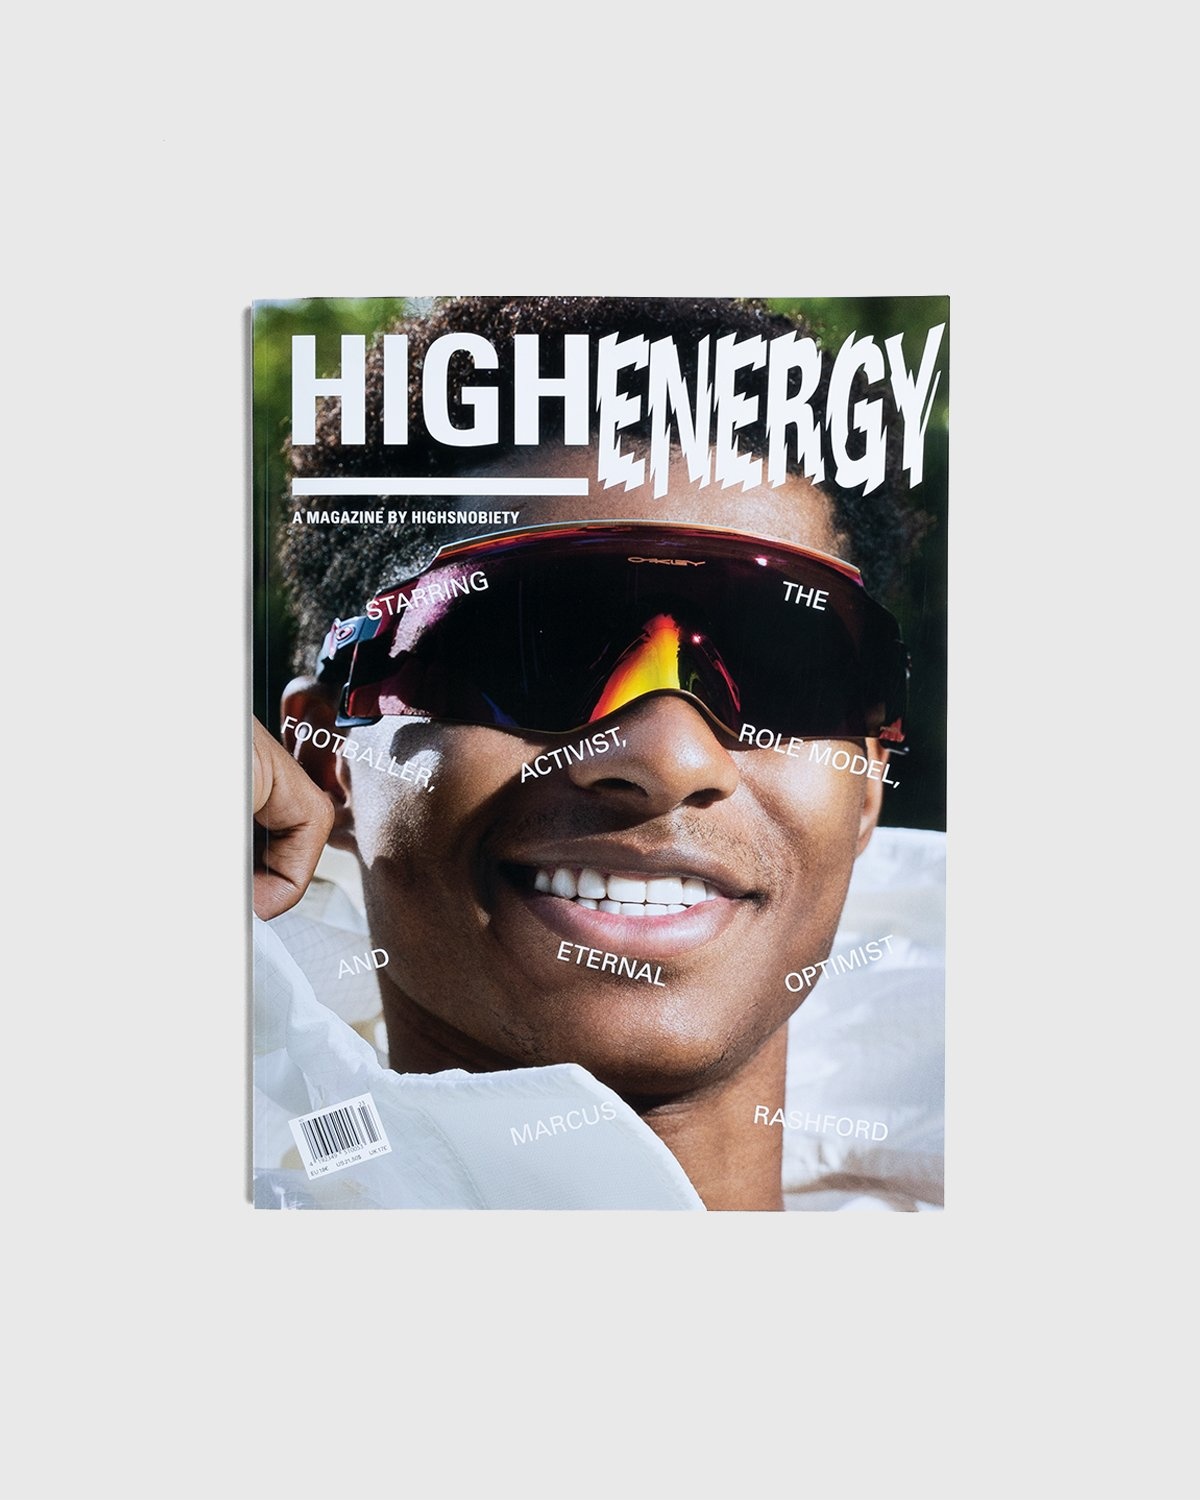 Highsnobiety – HIGHEnergy - A Magazine by Highsnobiety - Magazines - Multi - Image 1